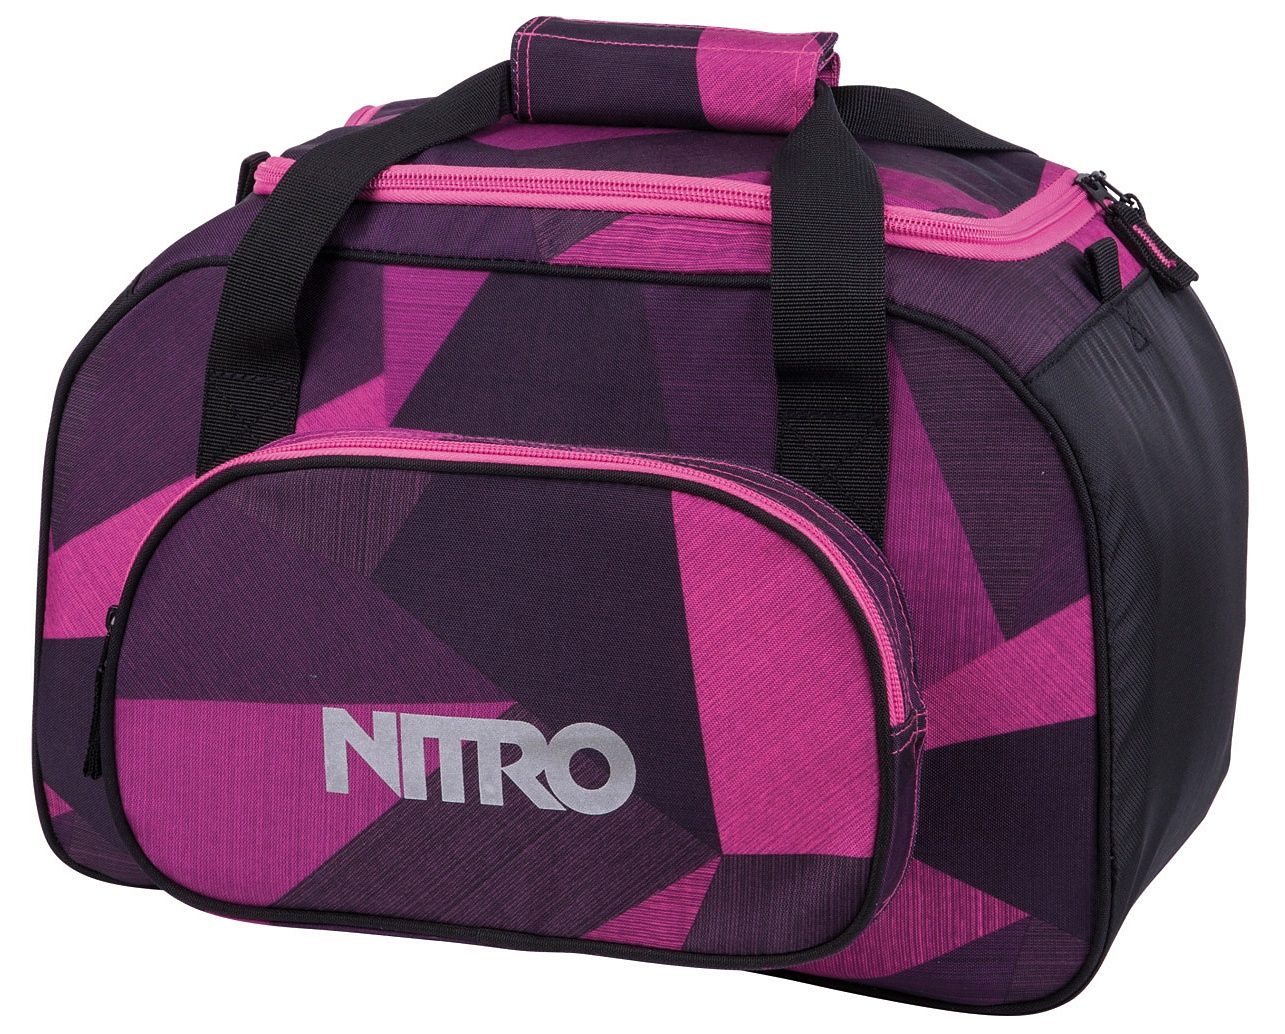 Otto - Nitro NU 15% KORTING: Nitro reistas, Duffle bag XS- Fragments purple